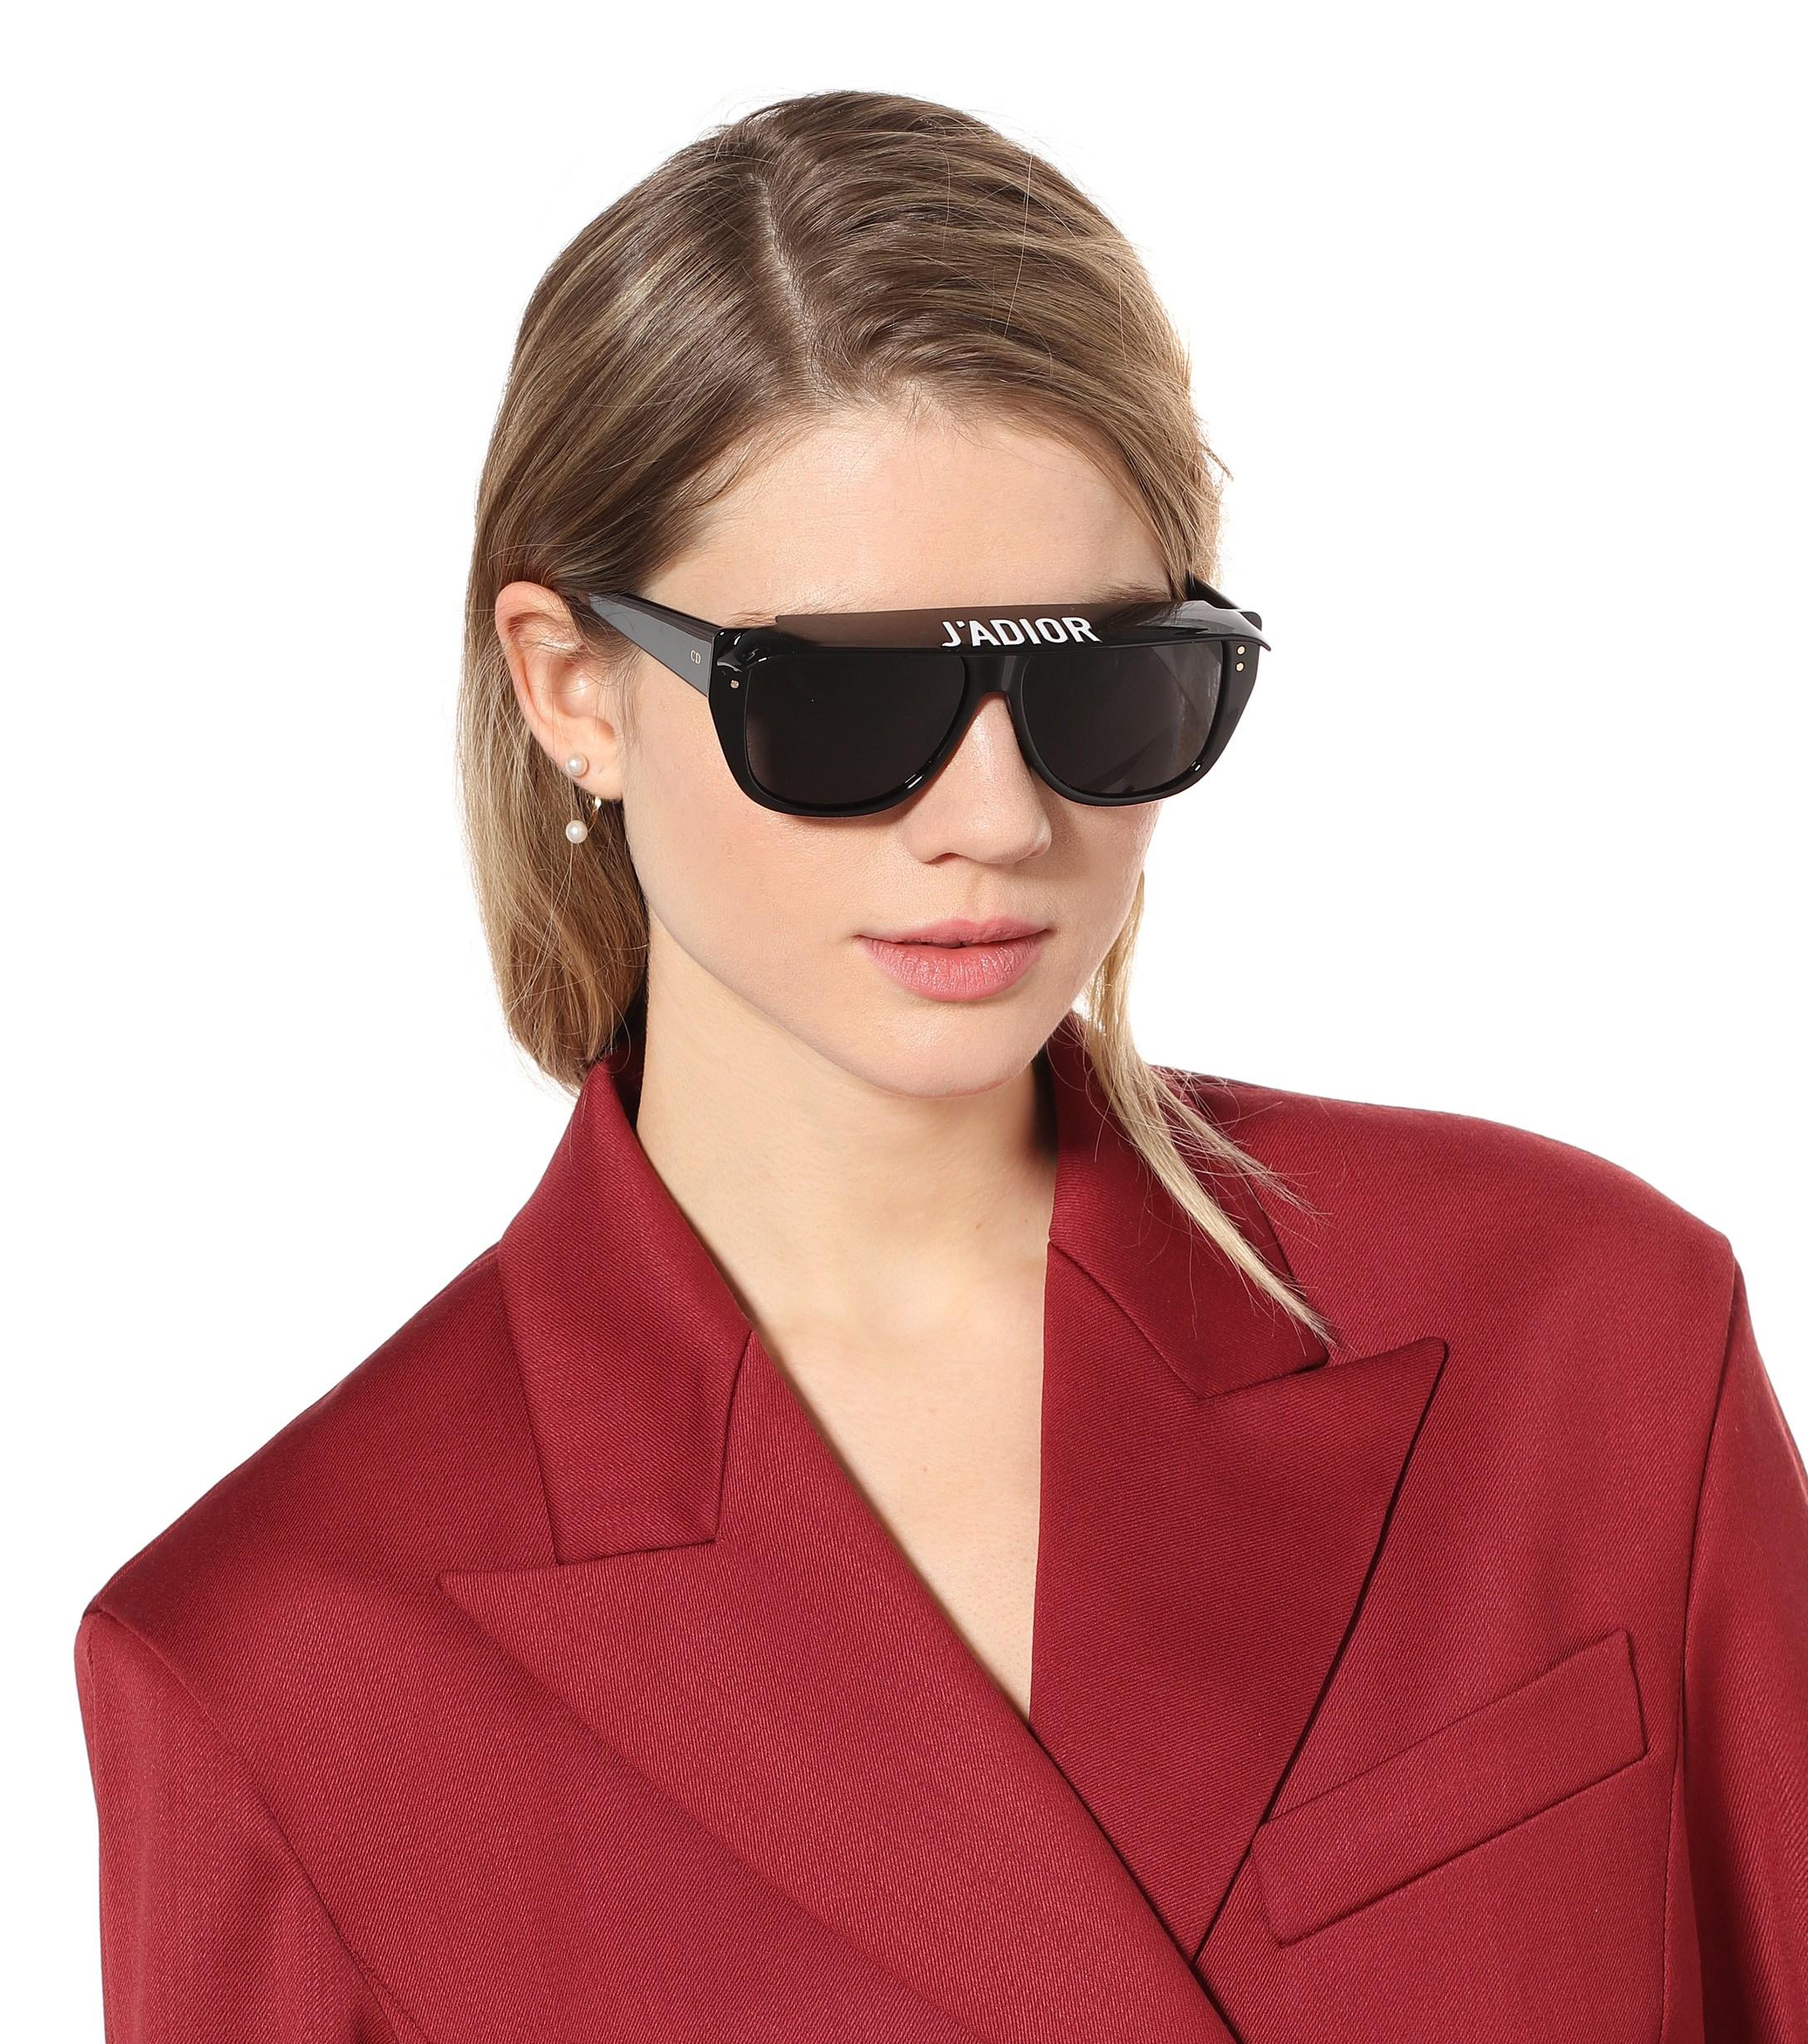 diorclub2 sunglasses price